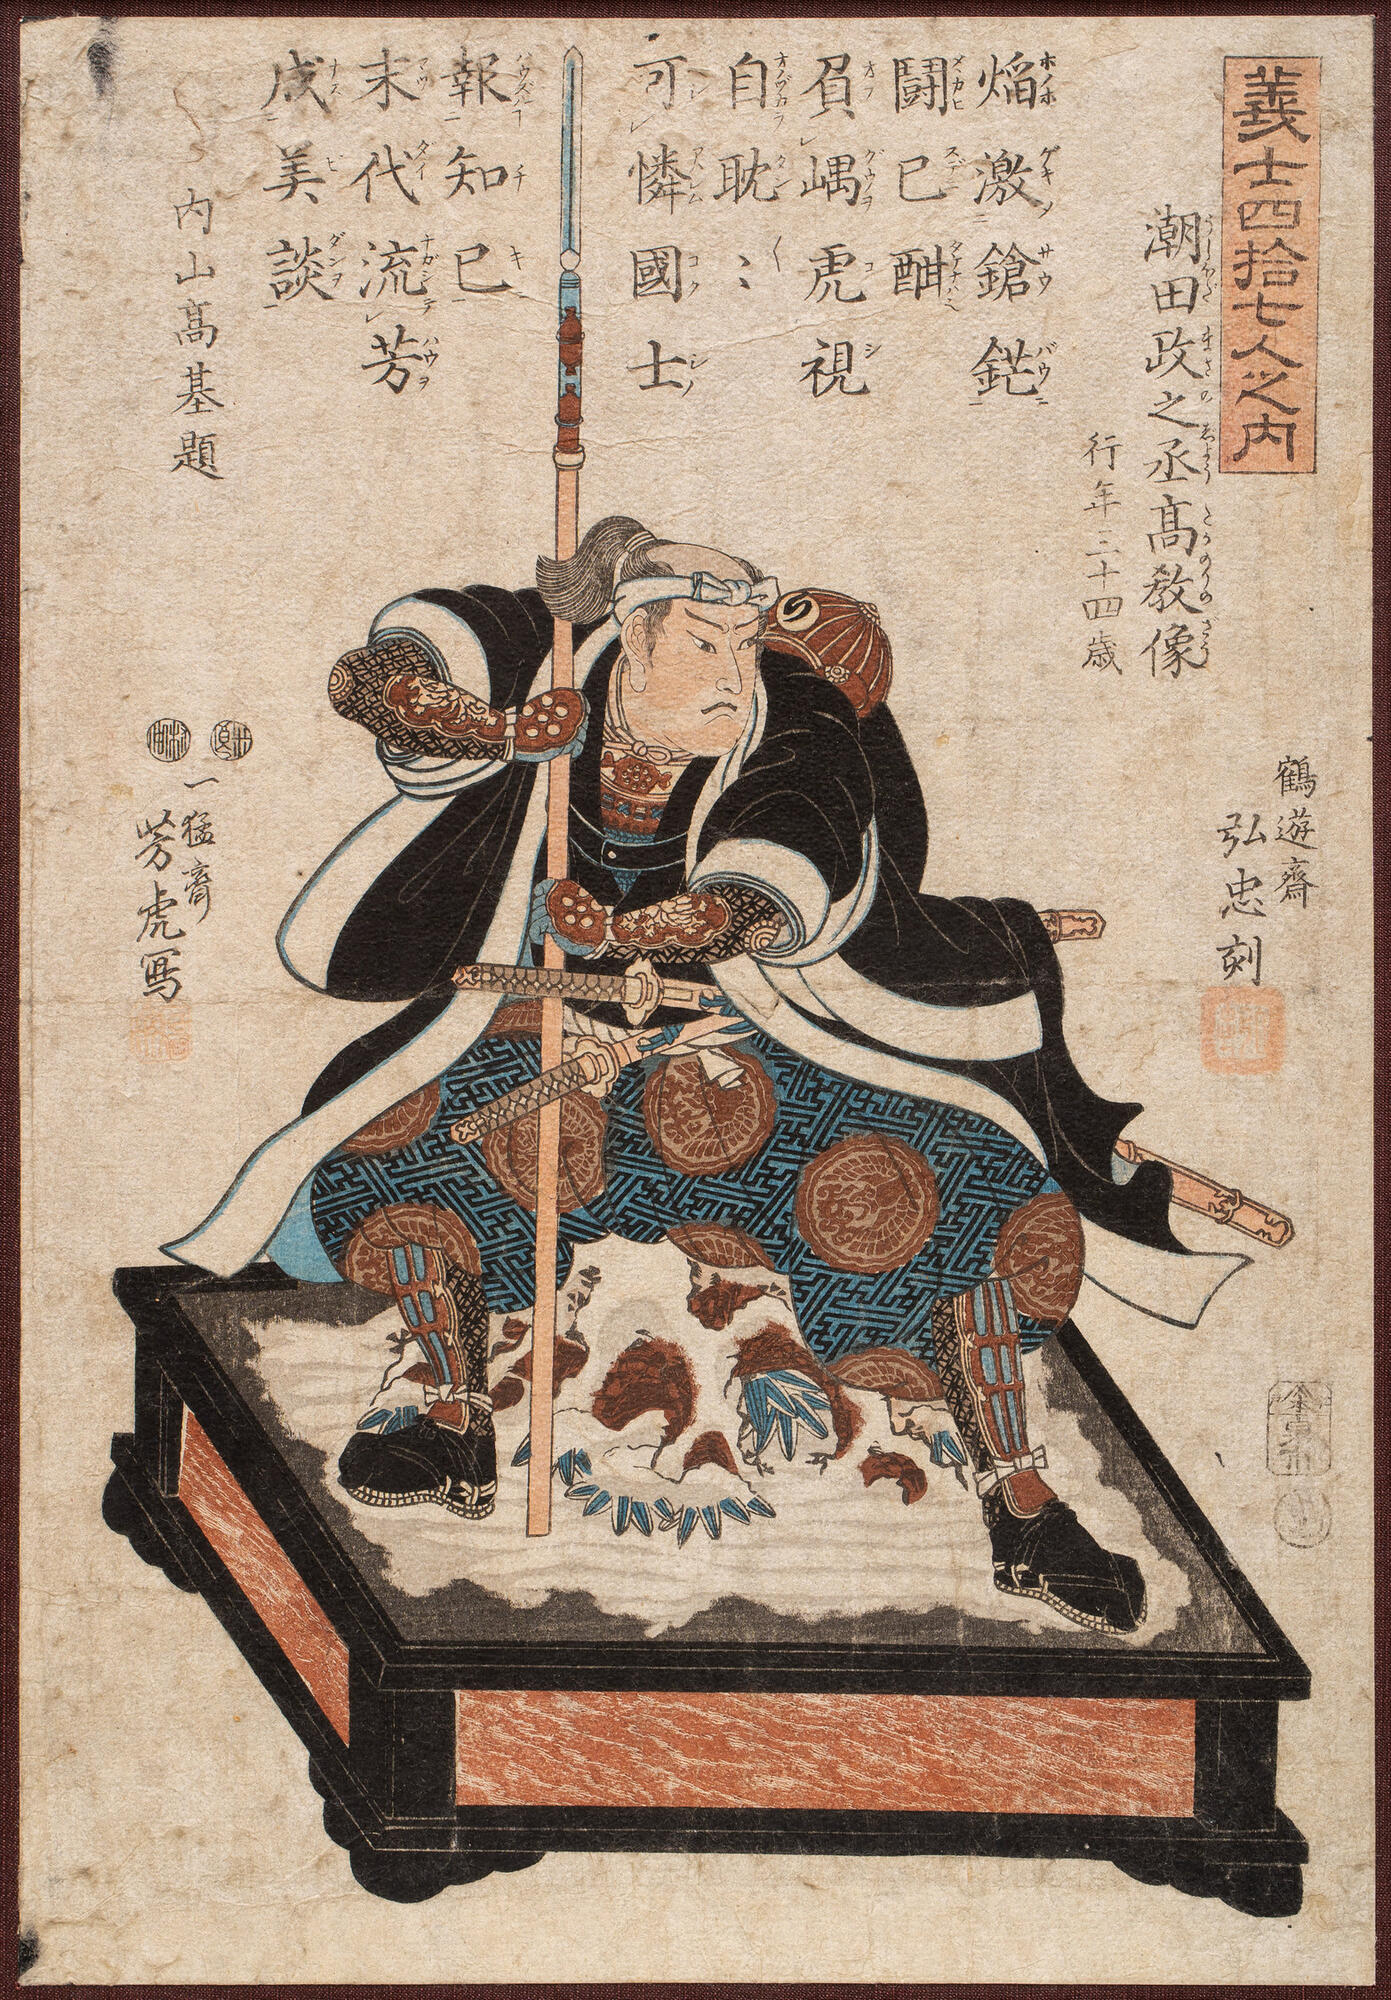 Portrait of a samurai - Yoshitora Utagawa. Подробное описание